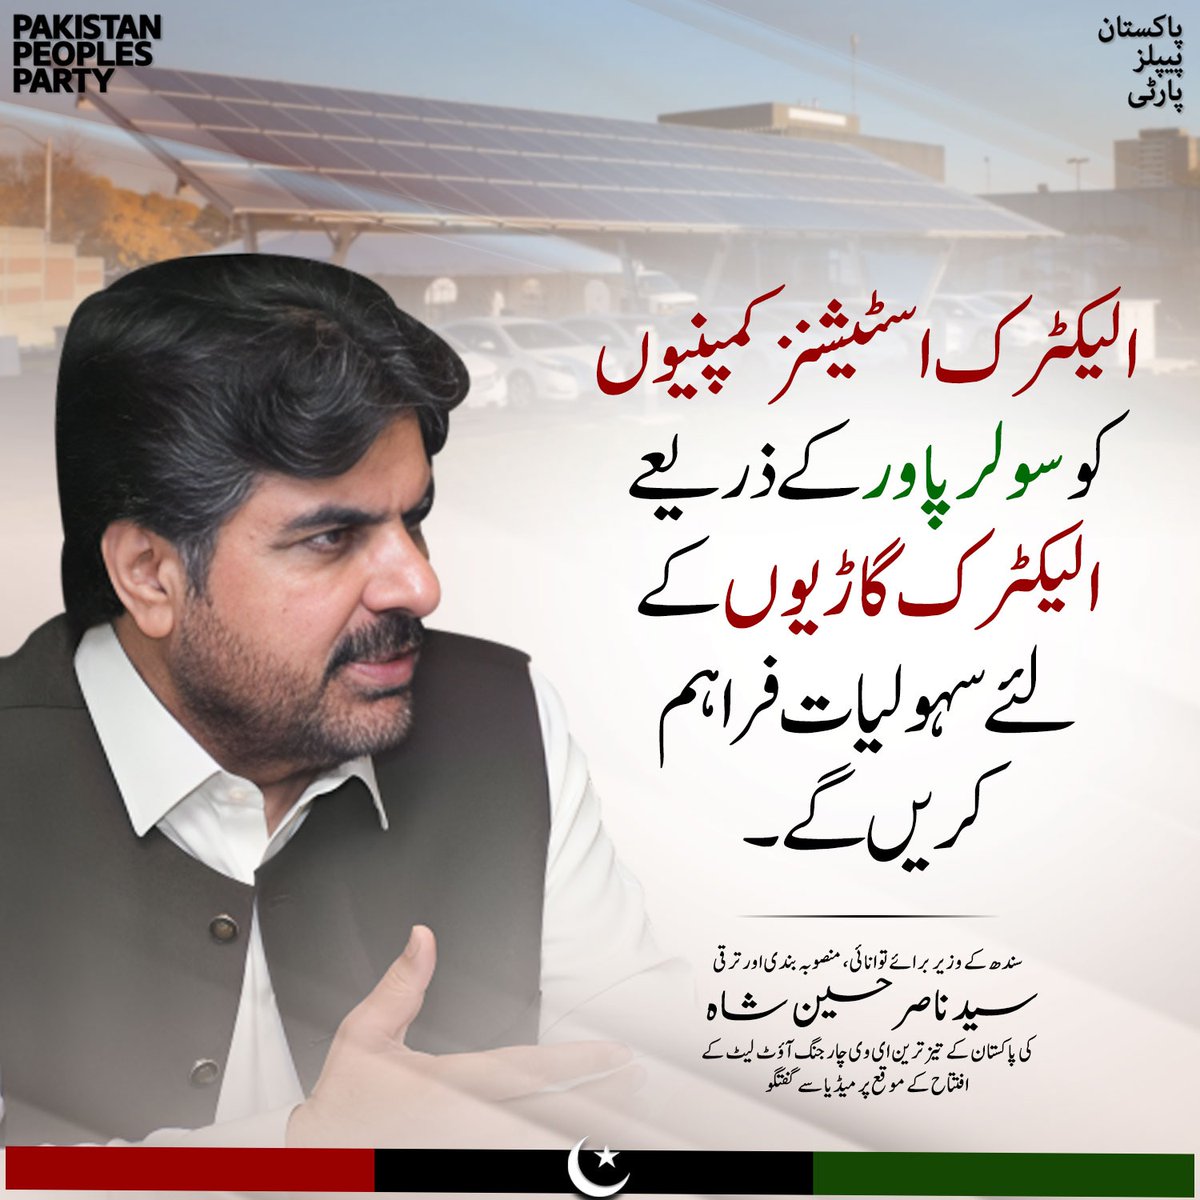 الیکٹرک اسٹیشنز کمپنیوں کو سولر پاور کے ذریعے الیکٹرک گاڑیوں کے لئے سہولیات فراہم کریں گے۔ سندھ کے وزیر برائے توانائی، منصوبہ بندی اور ترقی سید ناصر حسین شاہ @SyedNasirHShah